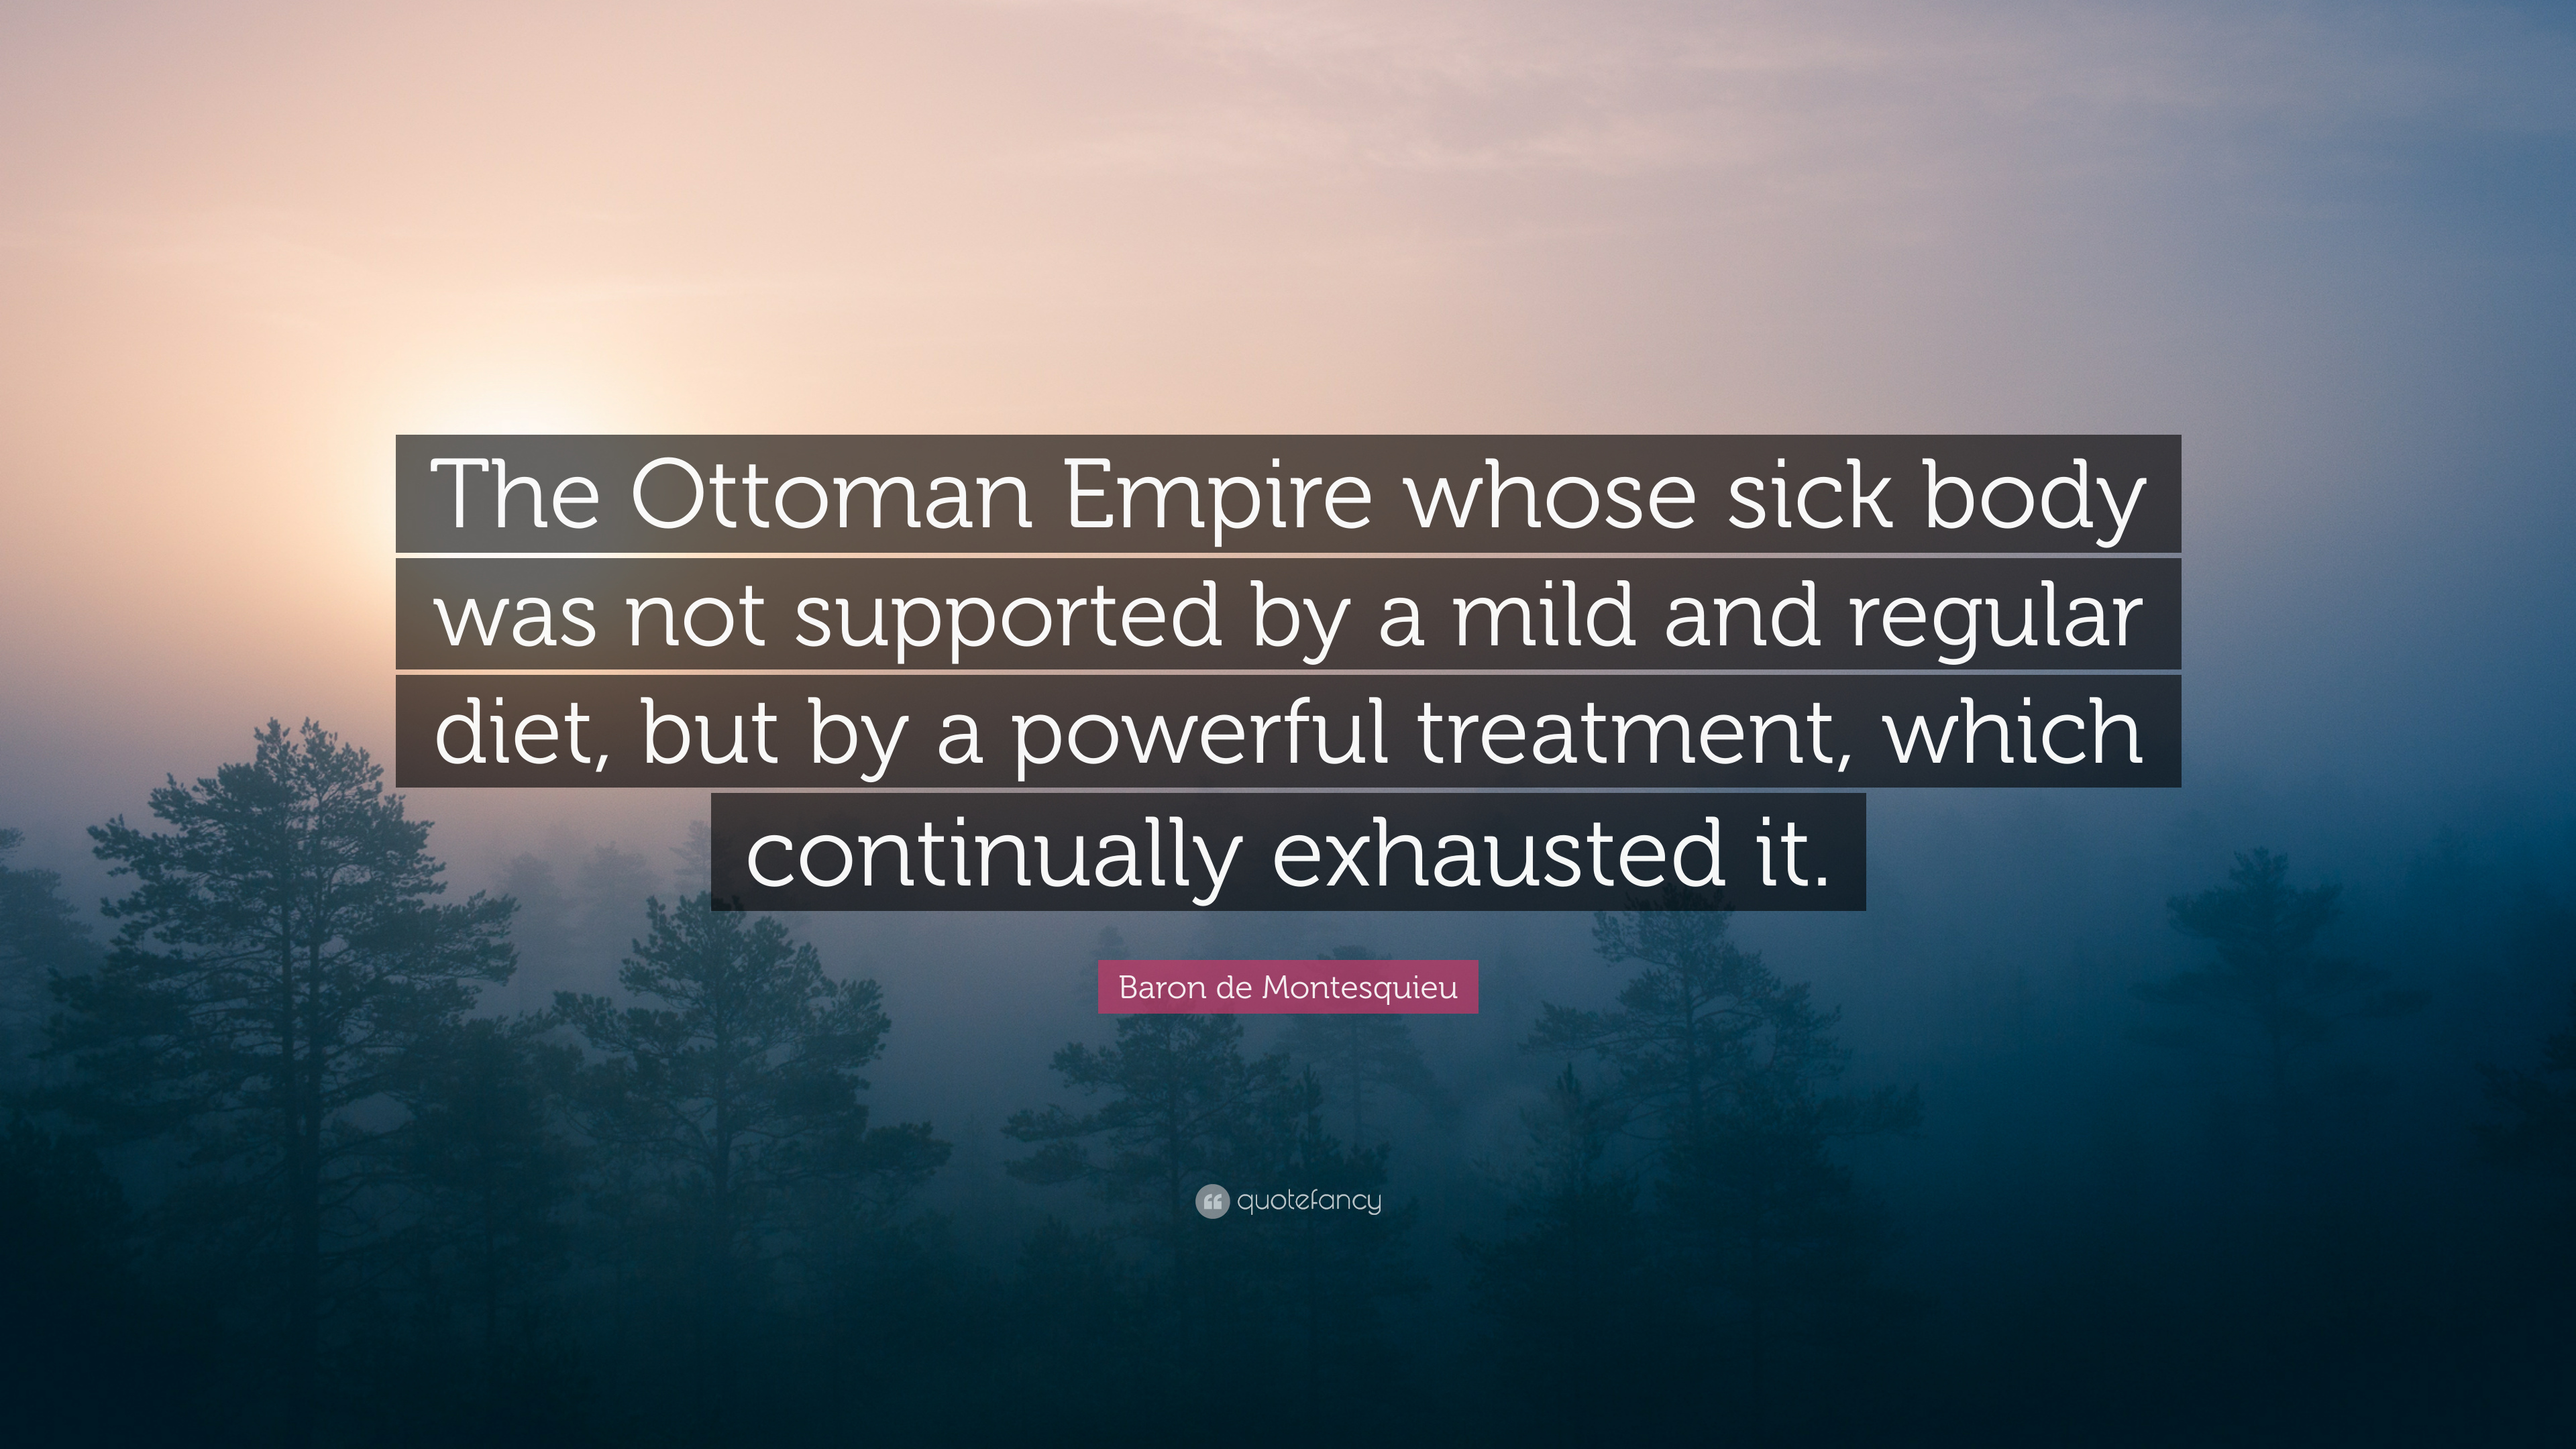 Baron de Montesquieu Quote: “The Ottoman Empire whose sick body was